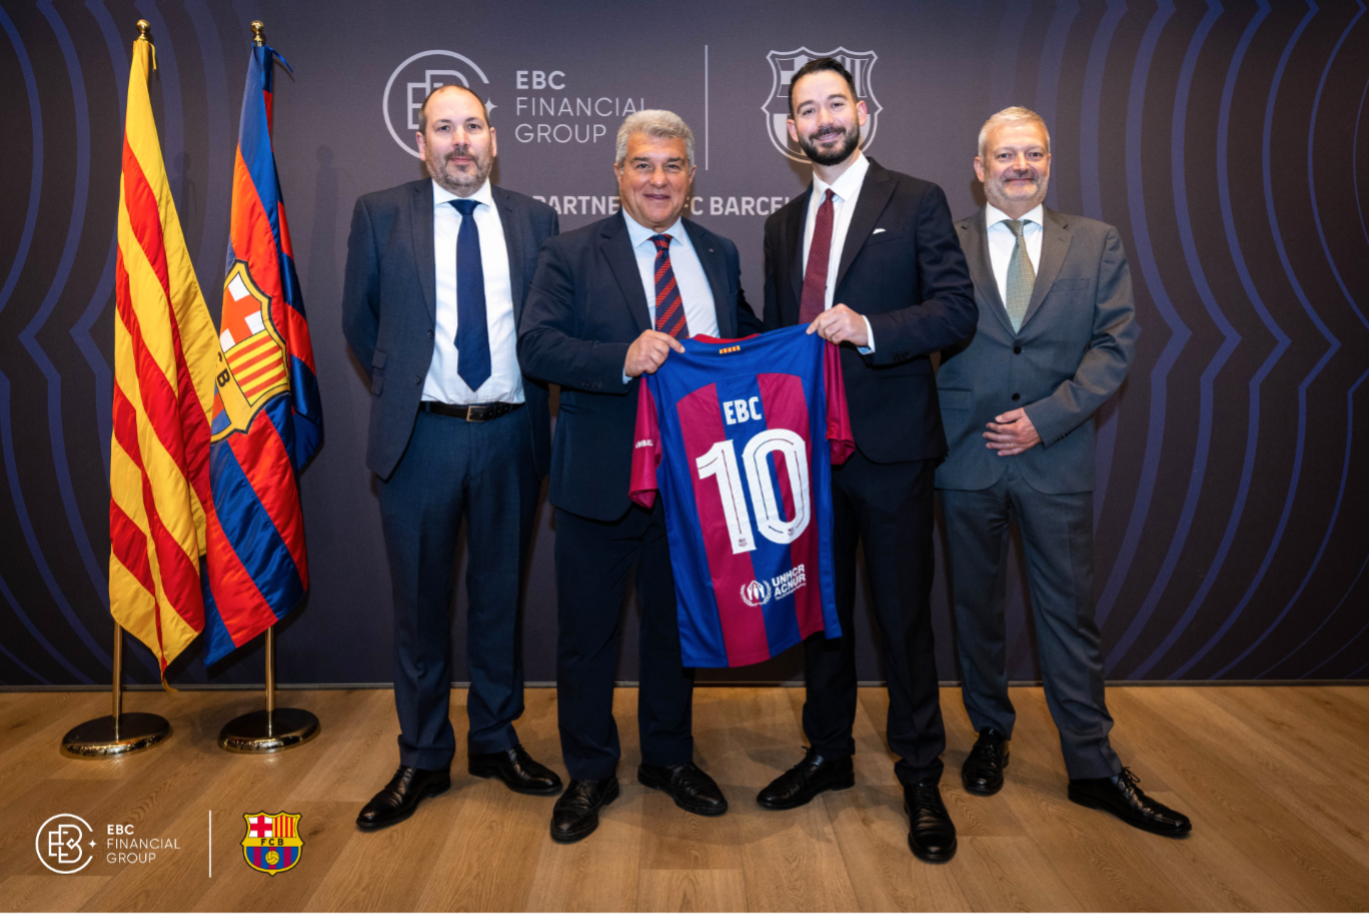 EBC Financial Group y FC Barcelona, junto con el presidente Joan Laporta, celebran la unión de las finanzas y el fútbol con un intercambio ceremonial de camisetas.